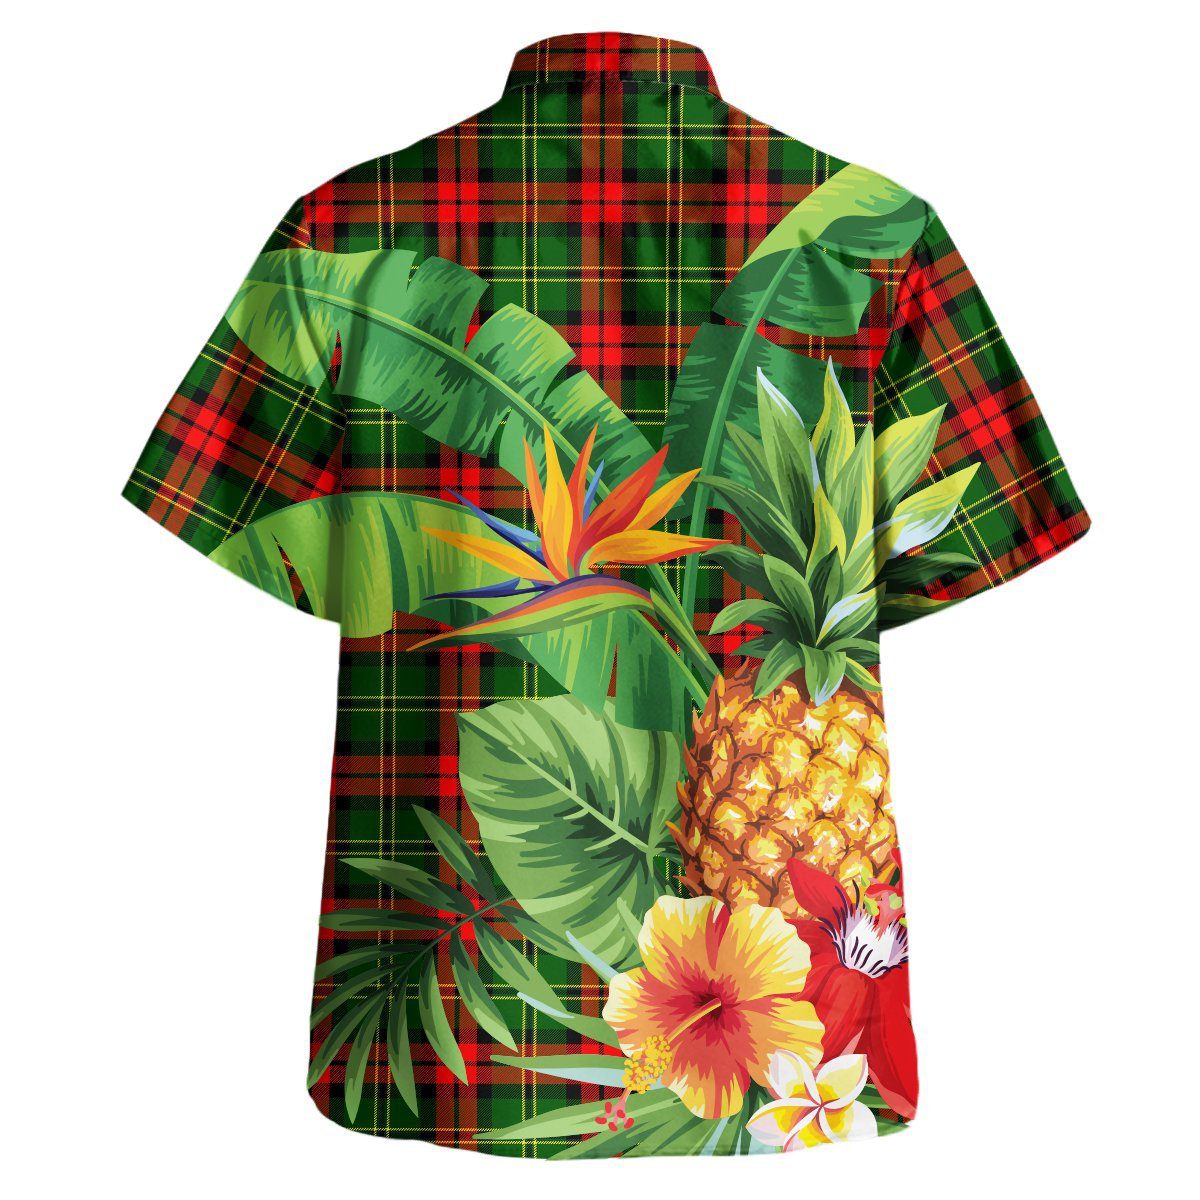 Blackstock Tartan Aloha Shirt version 2